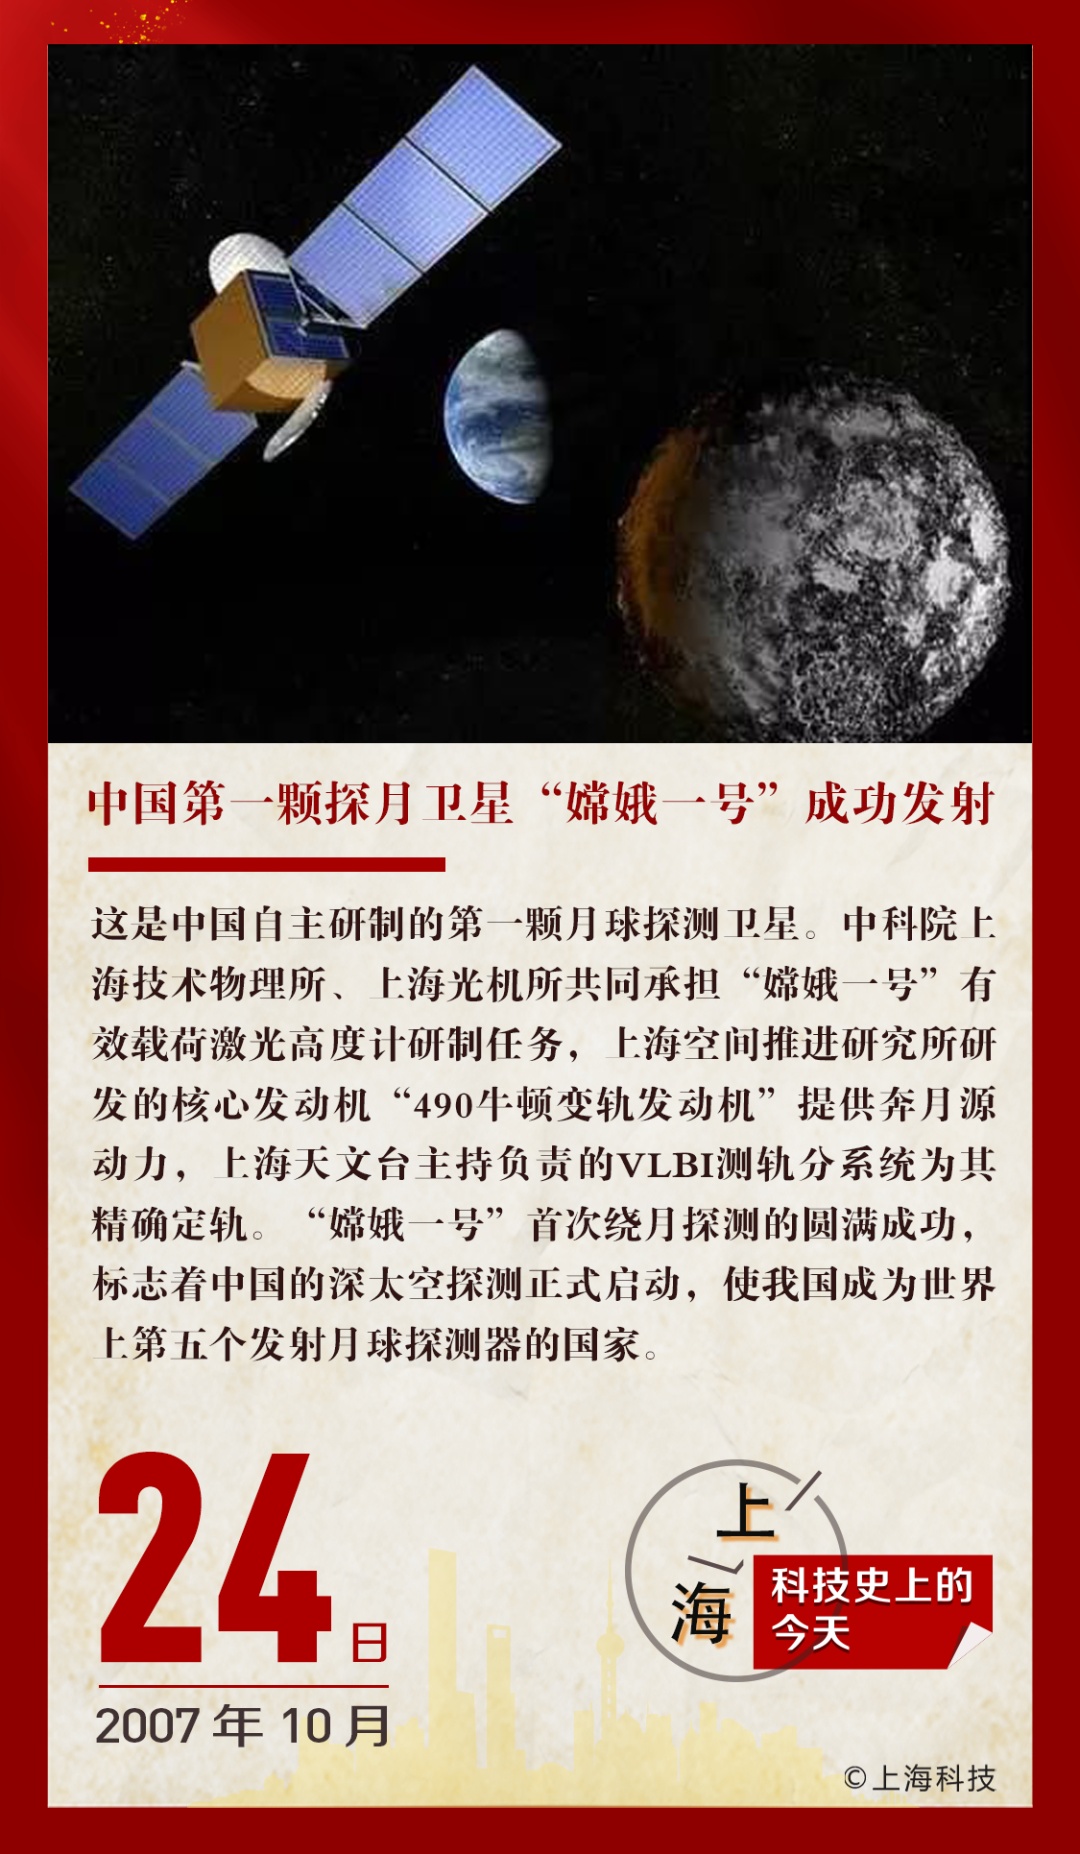 历史上的今天,中国第一颗探月卫星"嫦娥一号"成功发射